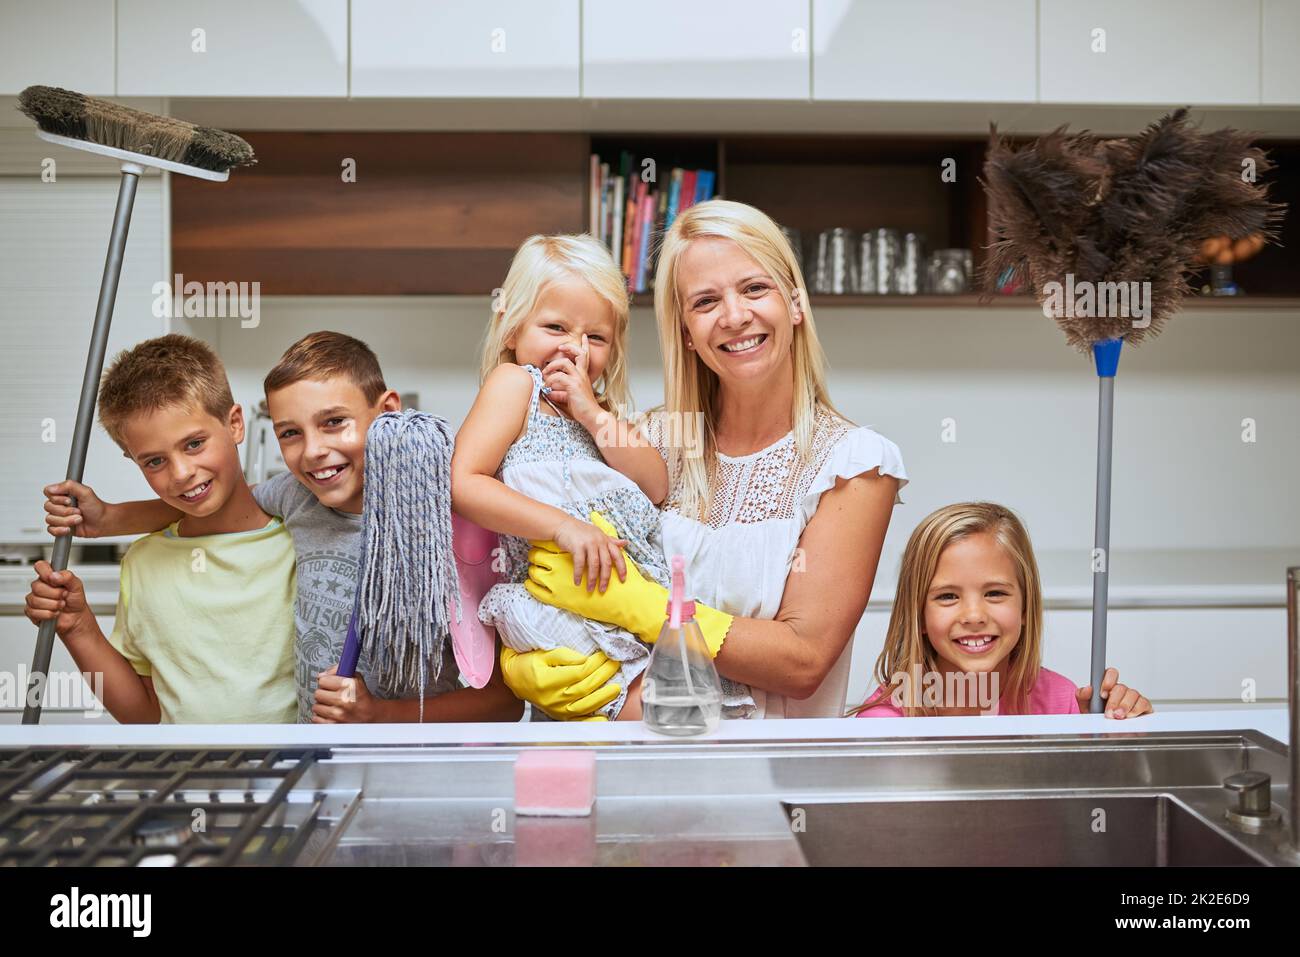 Mütter bekamen viele Helfer, um ihr Zuhause makellos sauber zu halten. Porträt einer Mutter und ihrer Kinder, die zu Hause gemeinsam arbeiten. Stockfoto